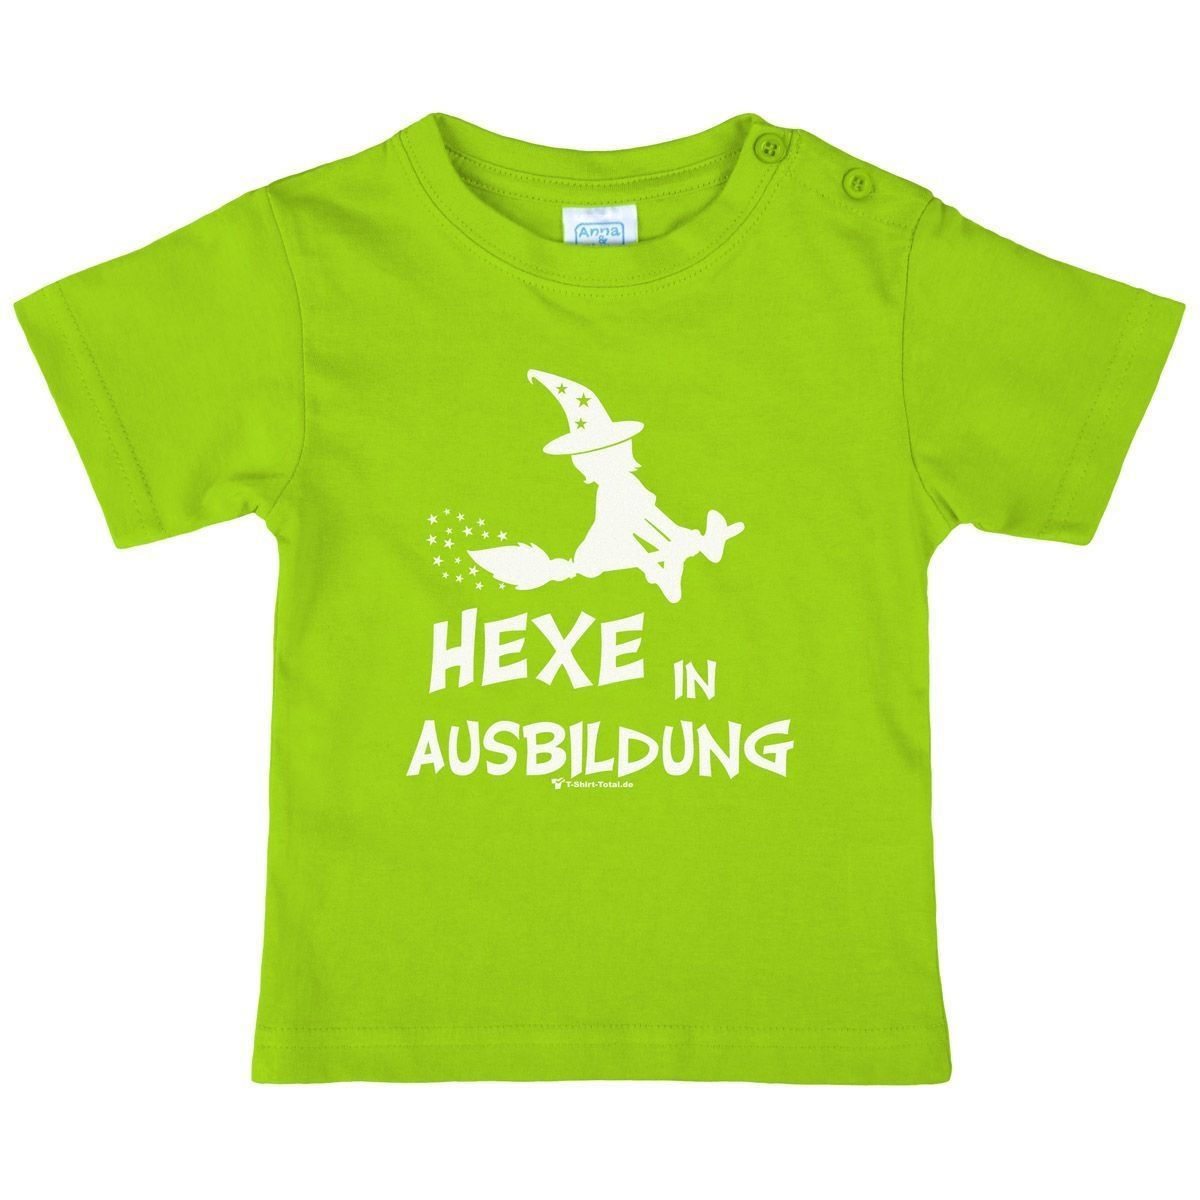 Hexe in Ausbildung Kinder T-Shirt hellgrün 110 / 116